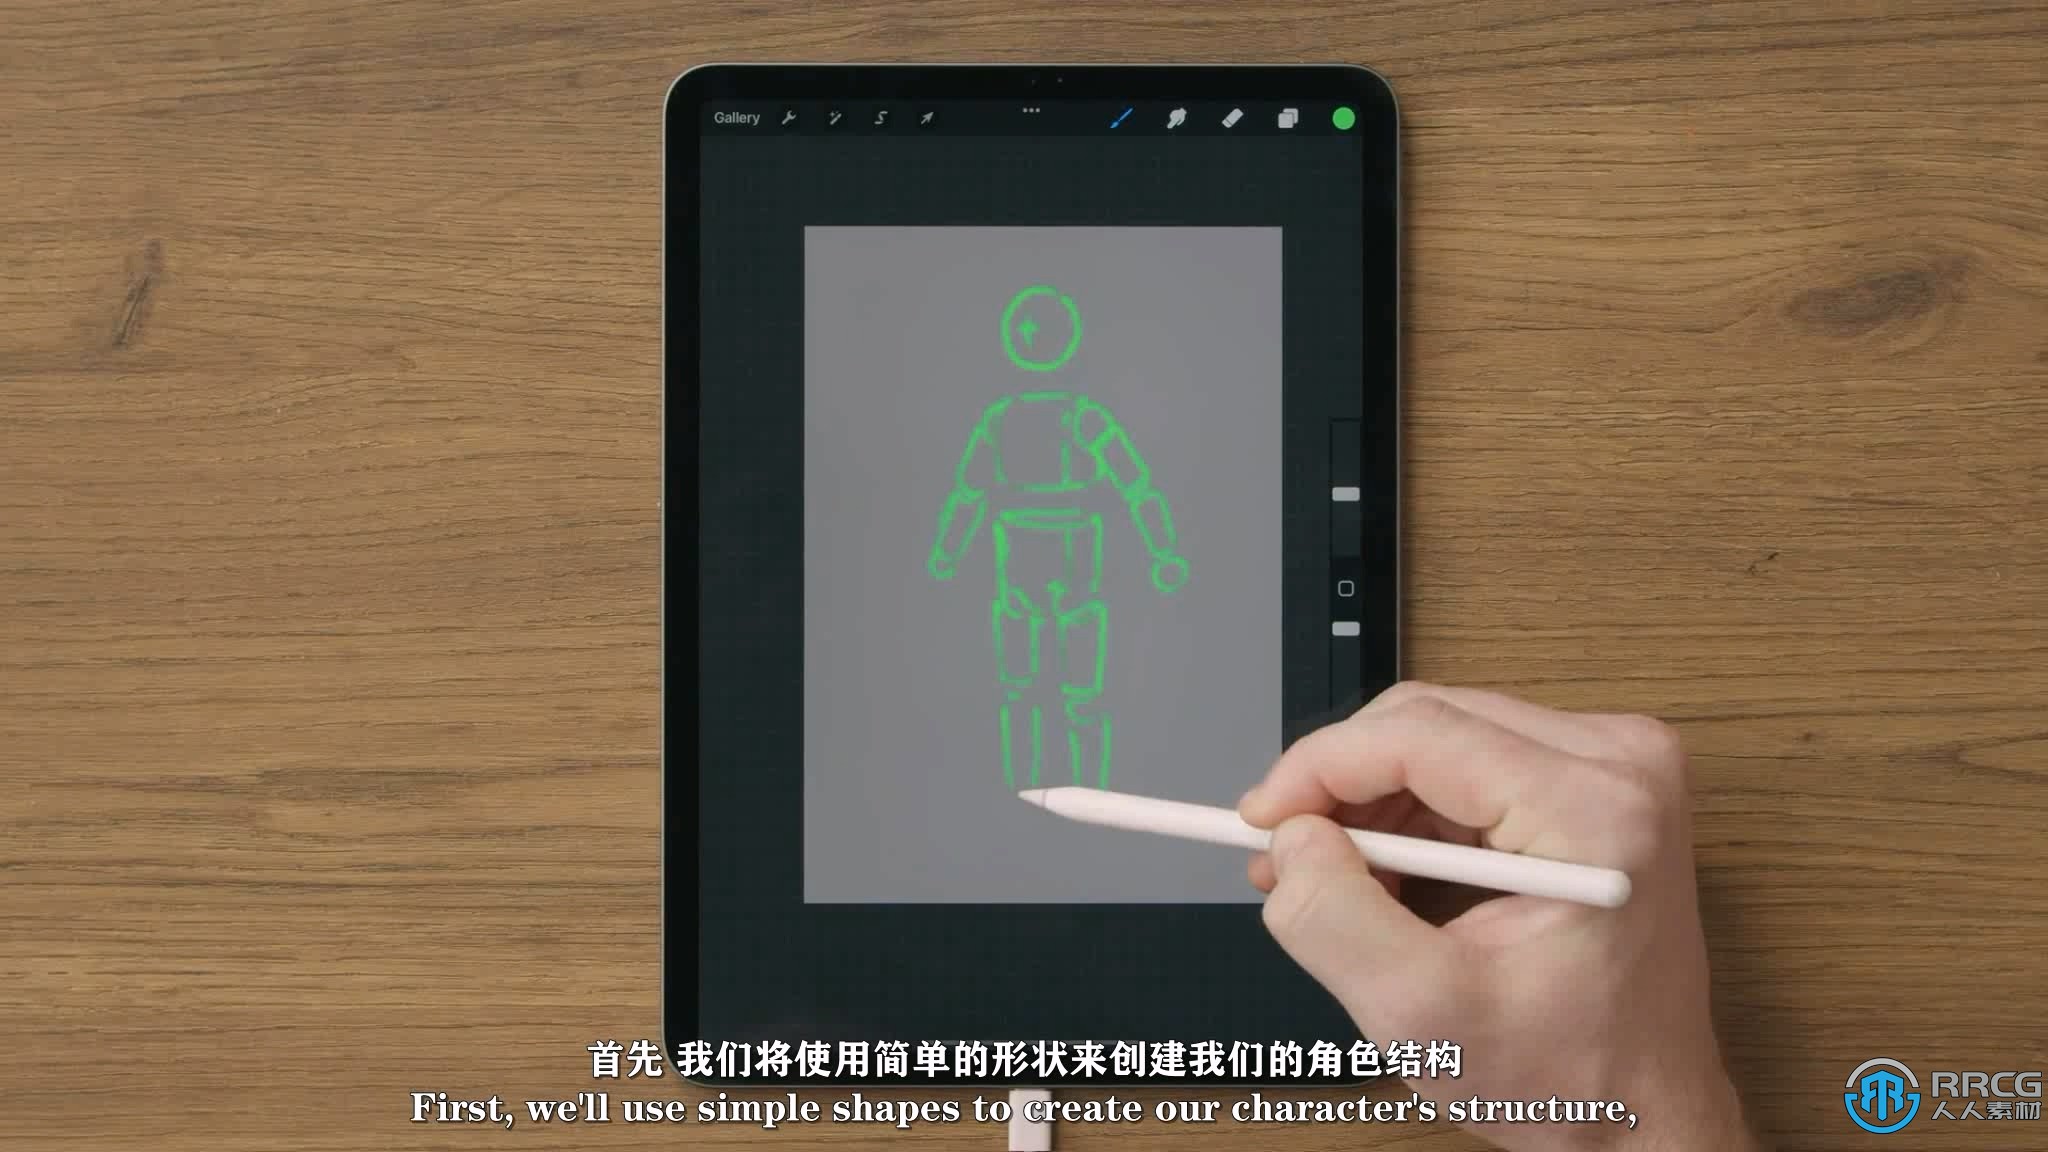 【中文字幕】人物设计和世界观建设概念艺术视频教程